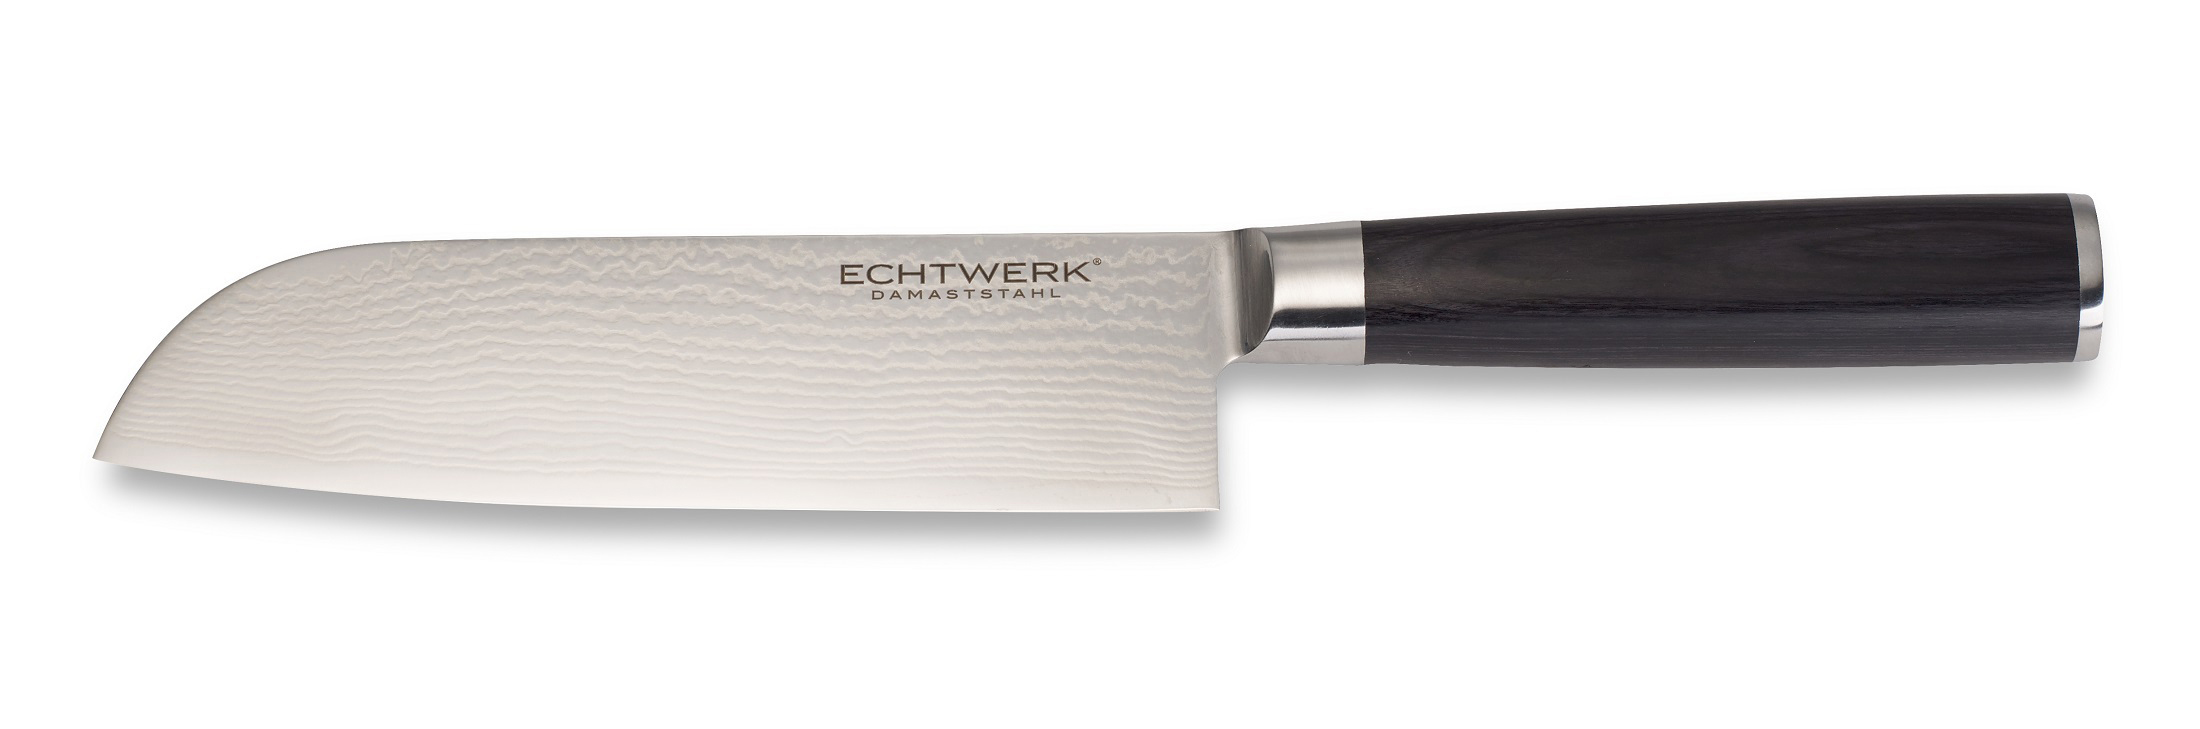 EW-DM-0360 ECHTWERK Allzweckmesser